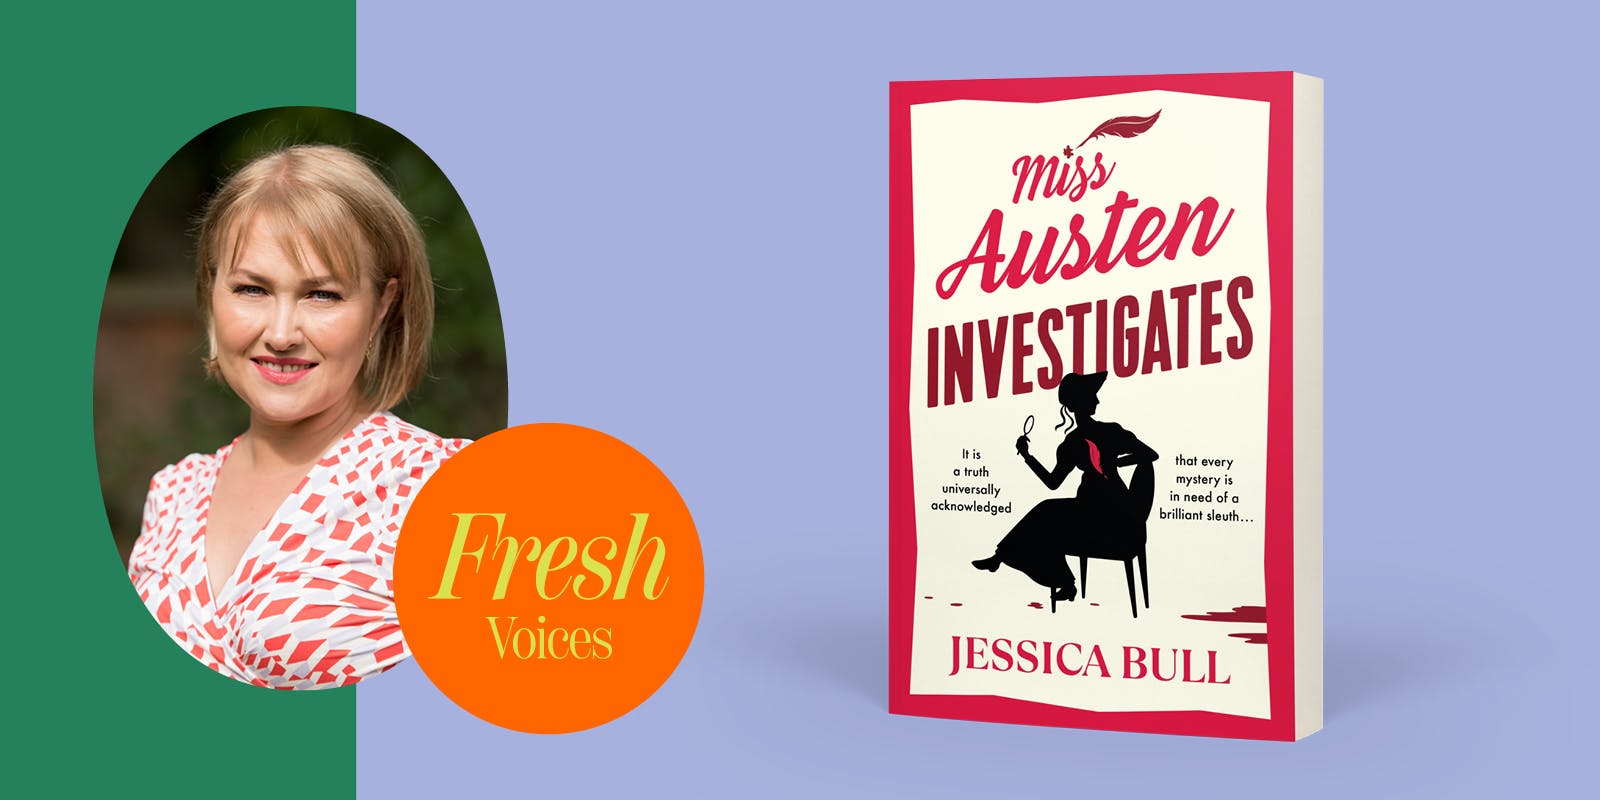 Jessica Bull shares how she entered Jane Austen’s world while writing her debut novel